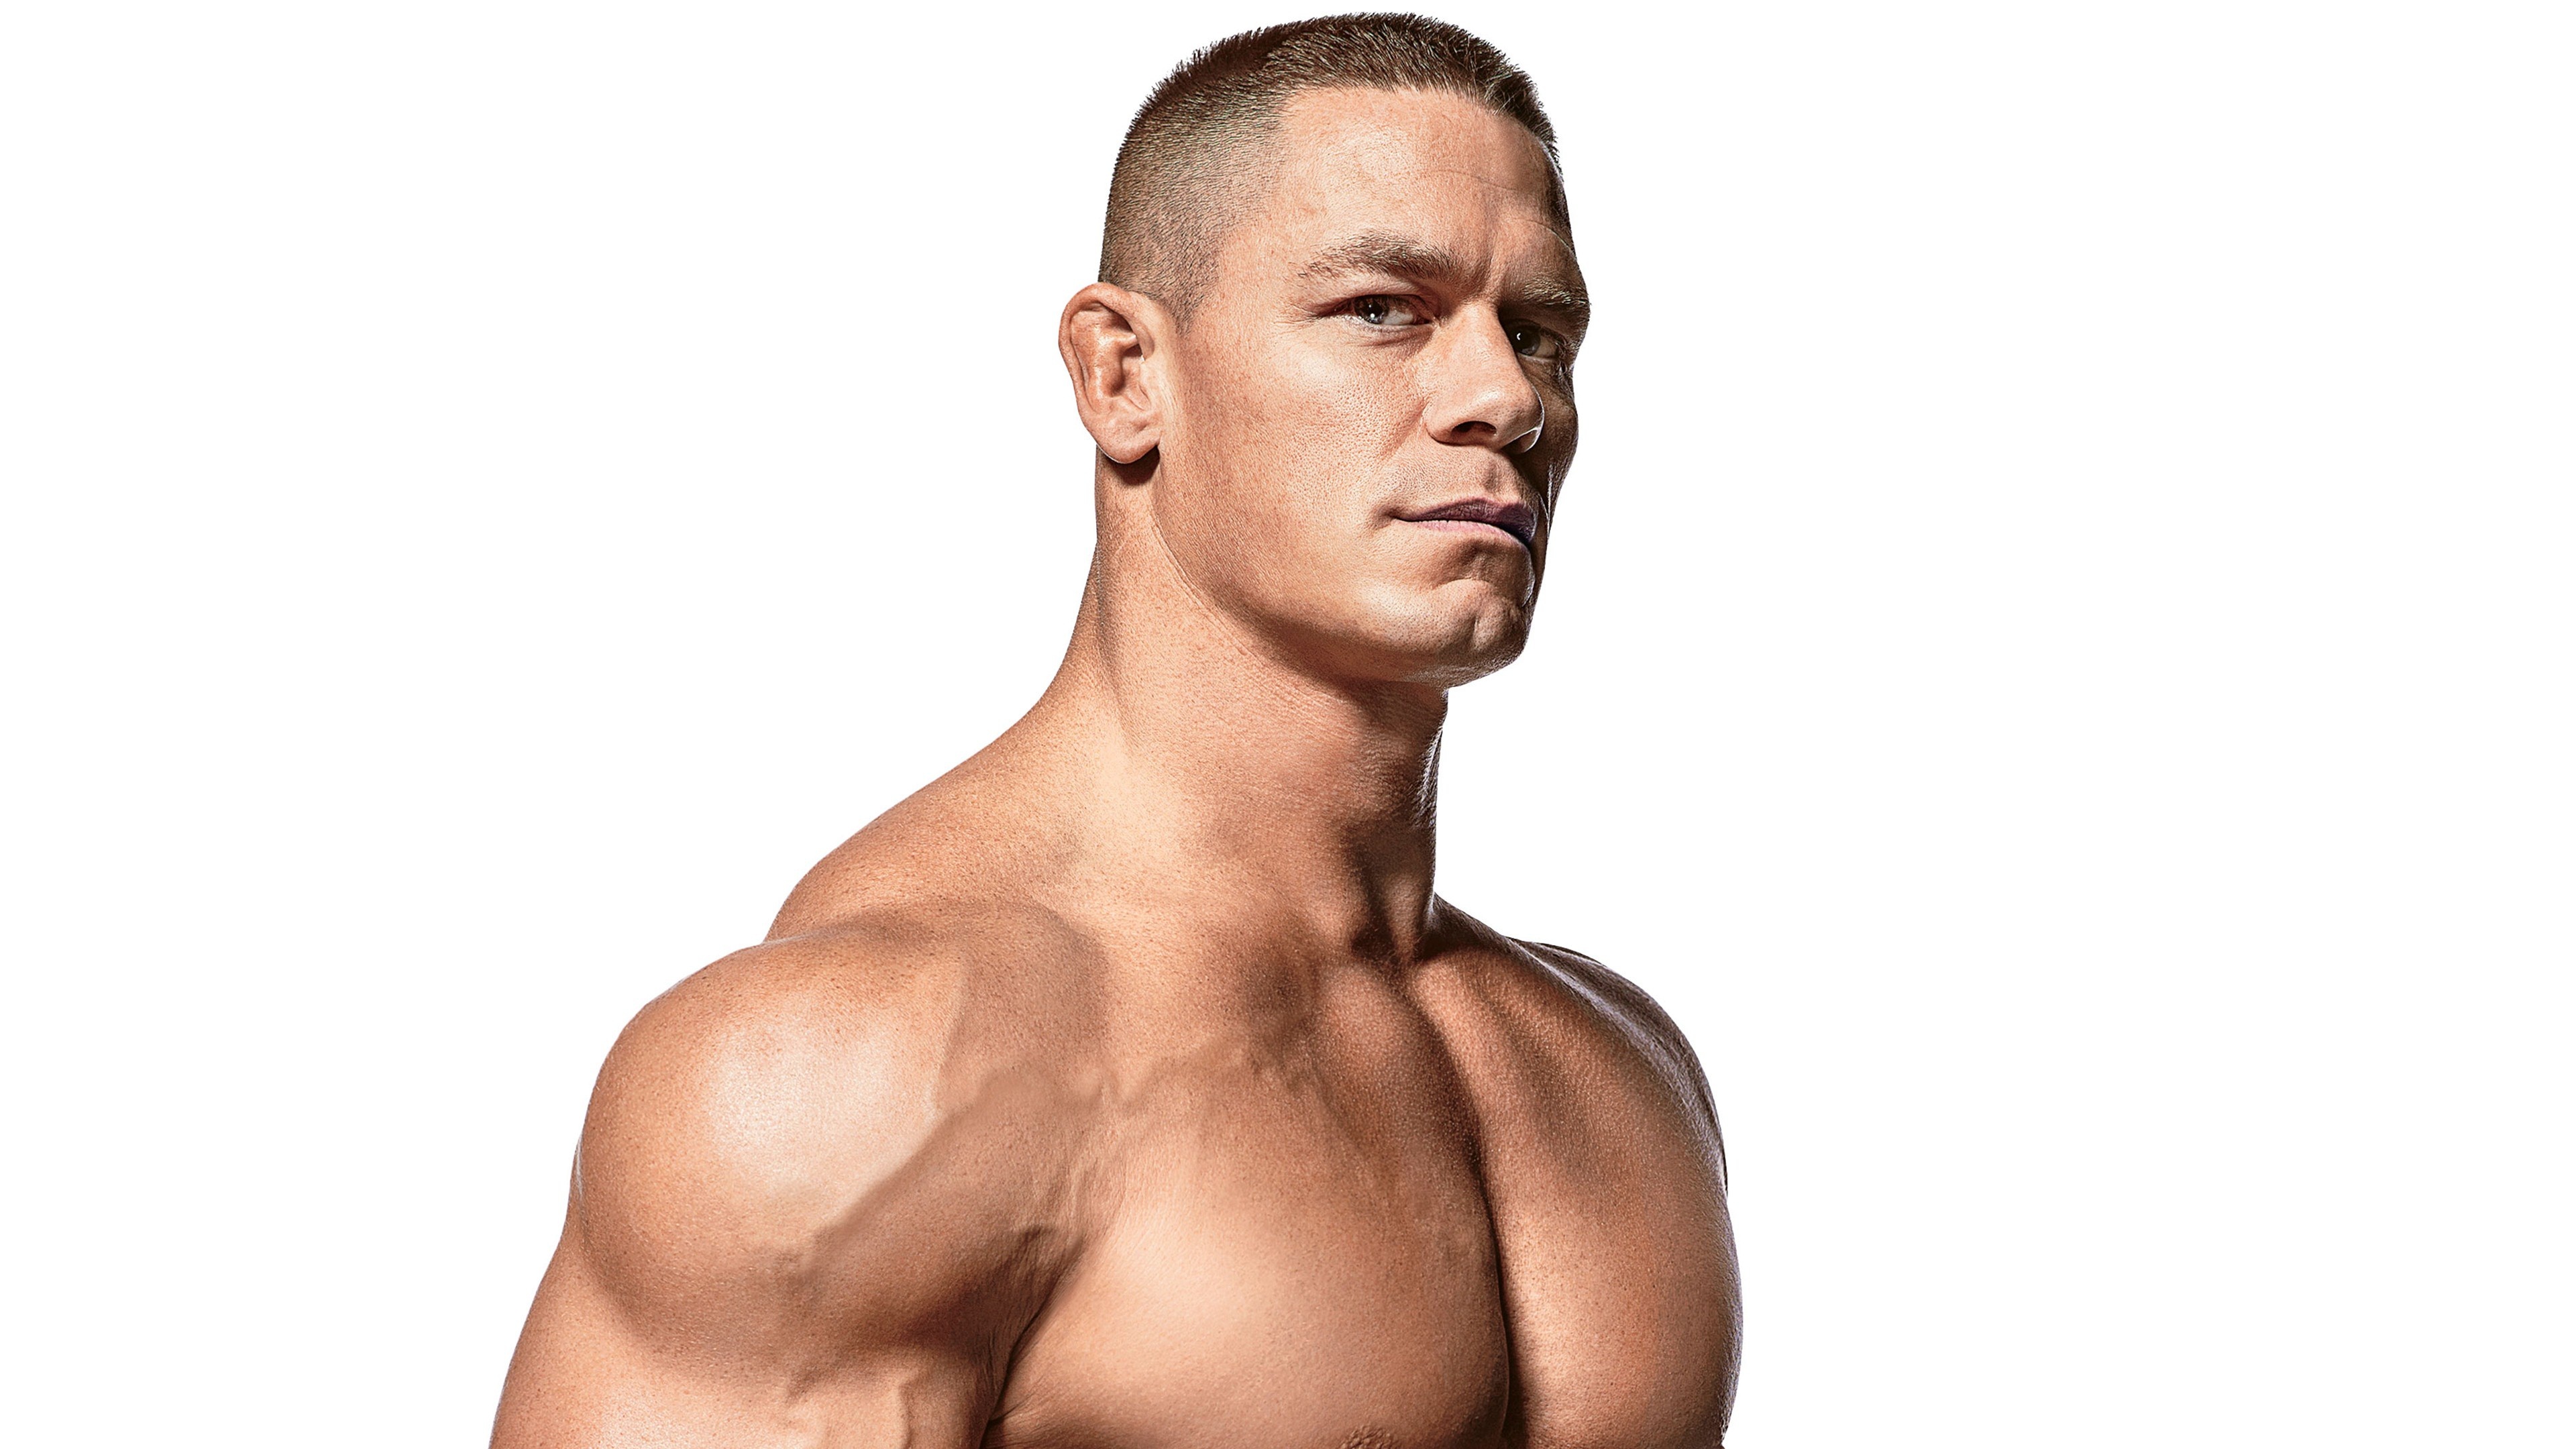 John Cena movies, Schauspieler portrait, Muscular physique, High resolution, 3840x2160 4K Desktop